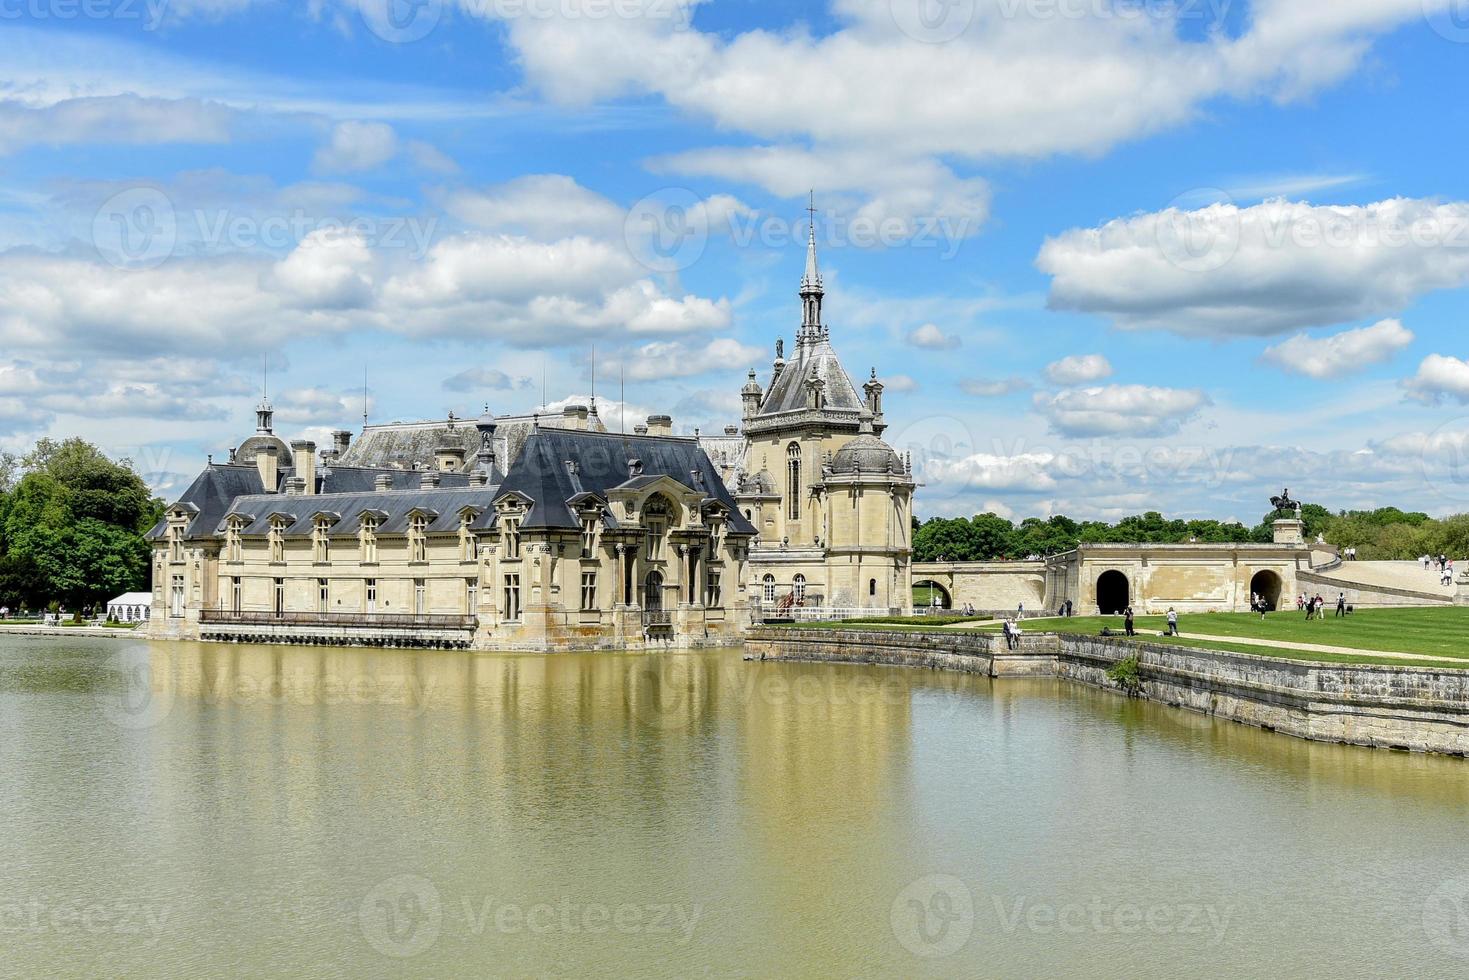 château de chantilly, château historique situé dans la ville de chantilly, france. photo